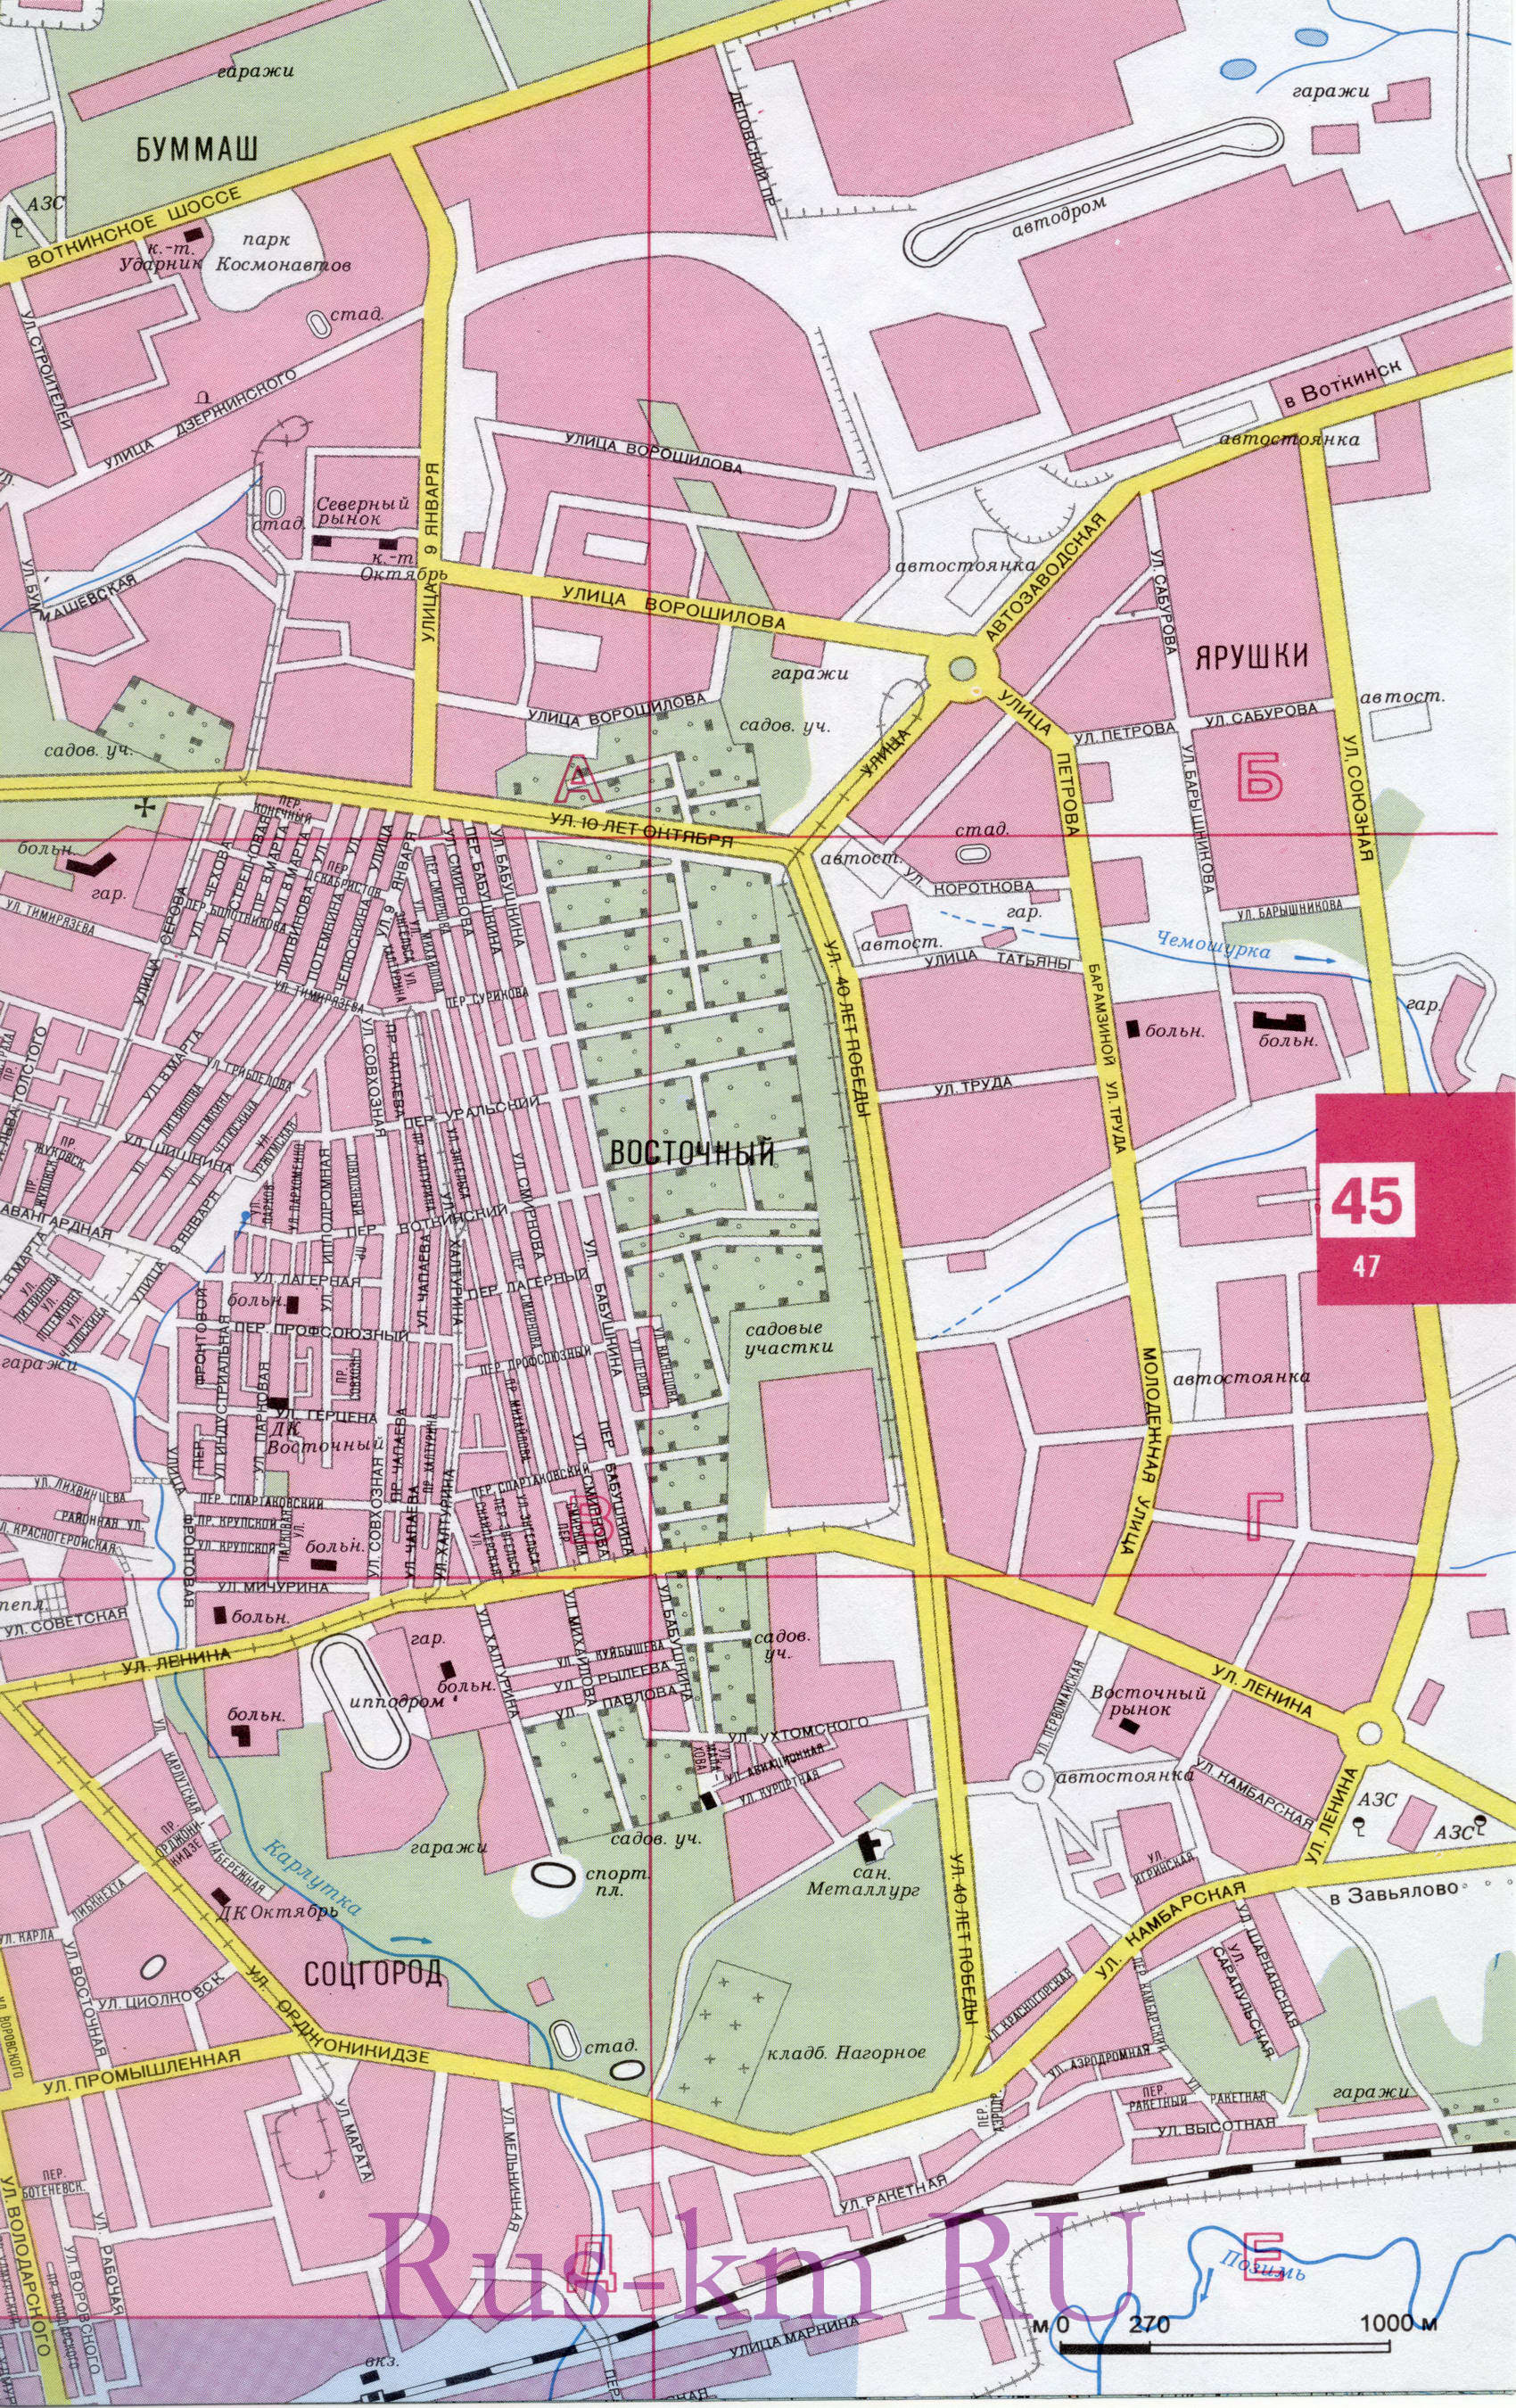 Карта Ижевска. Подробная карта города Ижевск. Карта улиц Ижевска с достопримечательностями и схемой проезда, B0 -